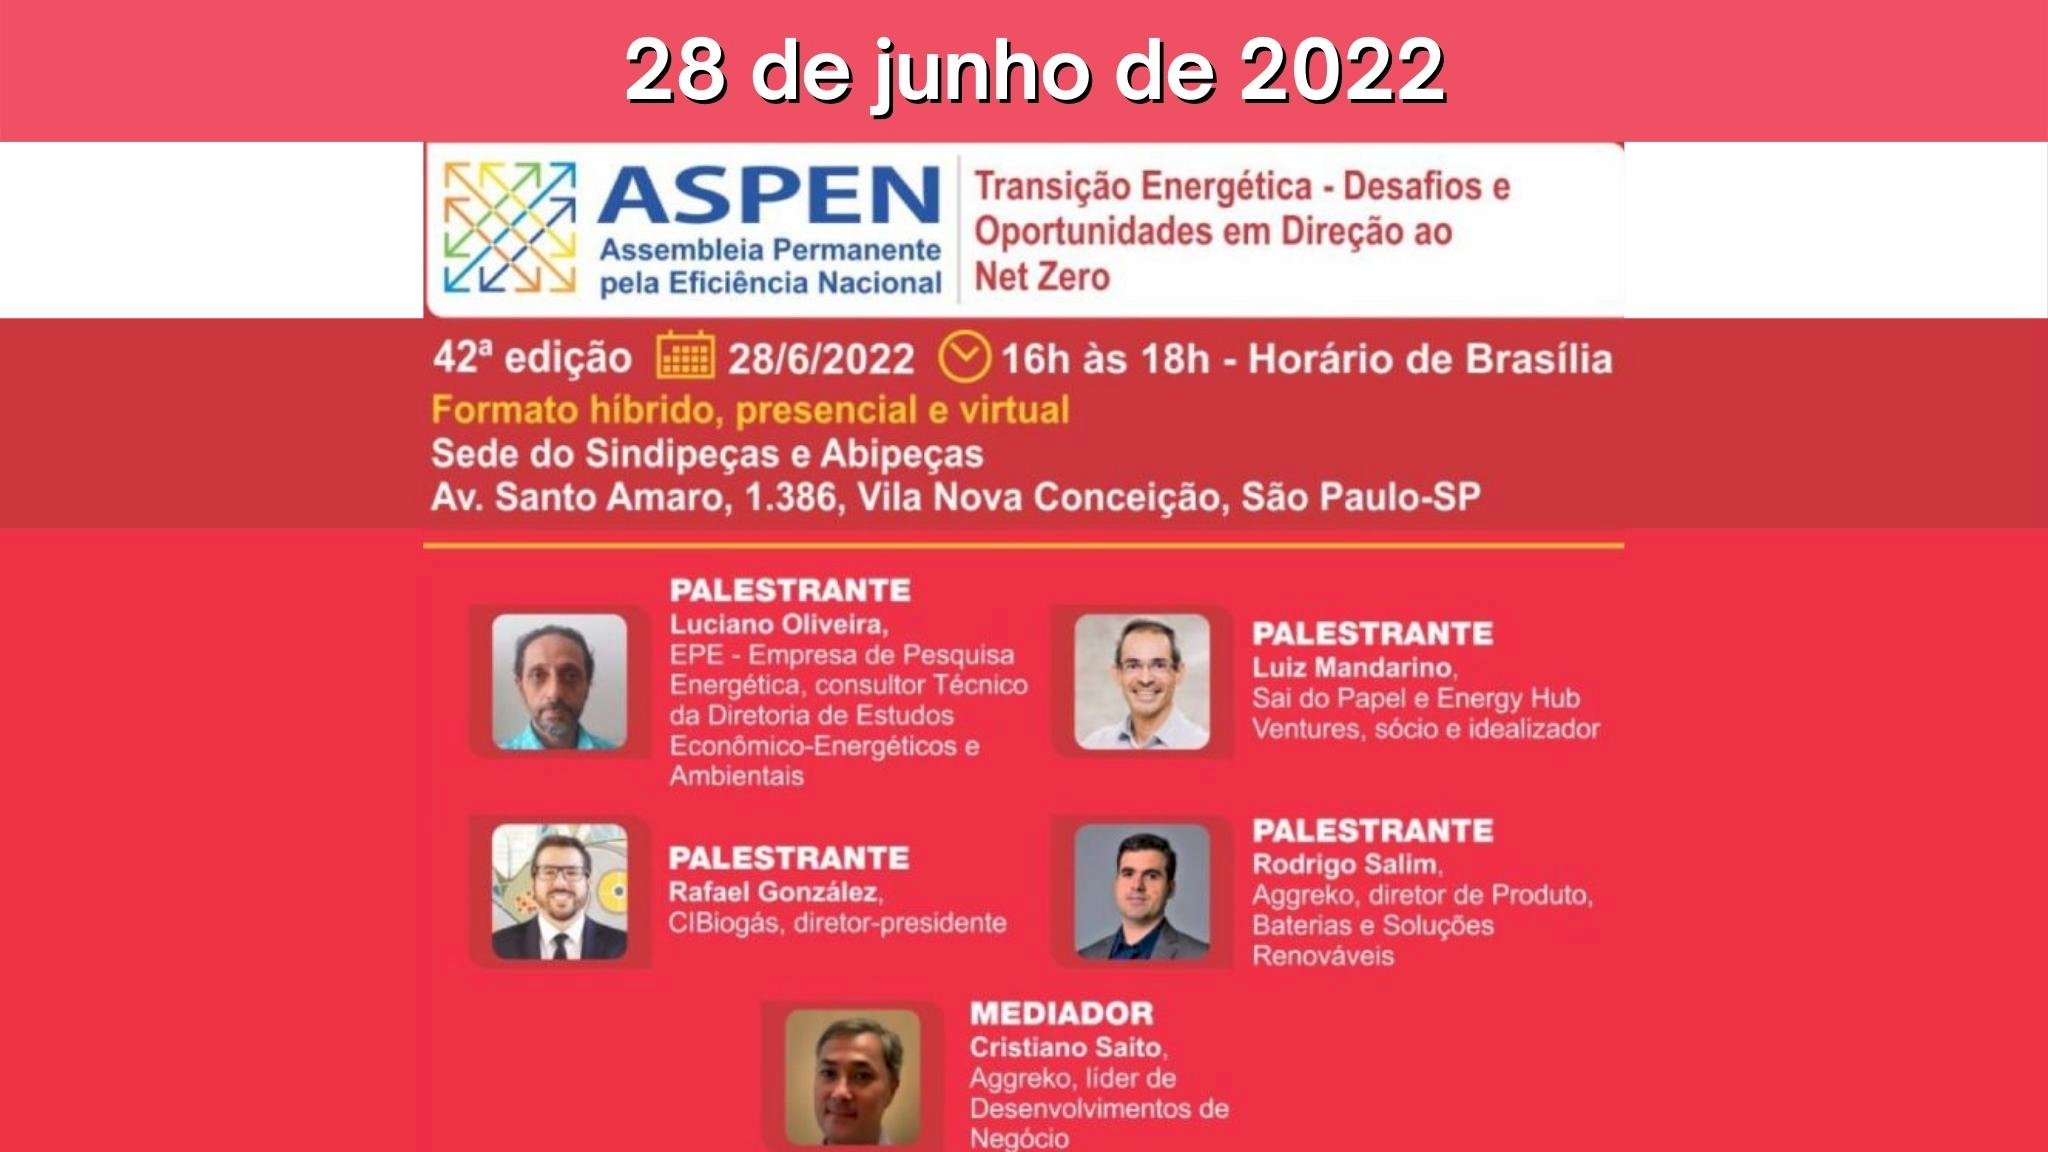 Live: 42ª ASPEN - Transição Energética - Desafios e Oportunidades em Direção ao Net Zero